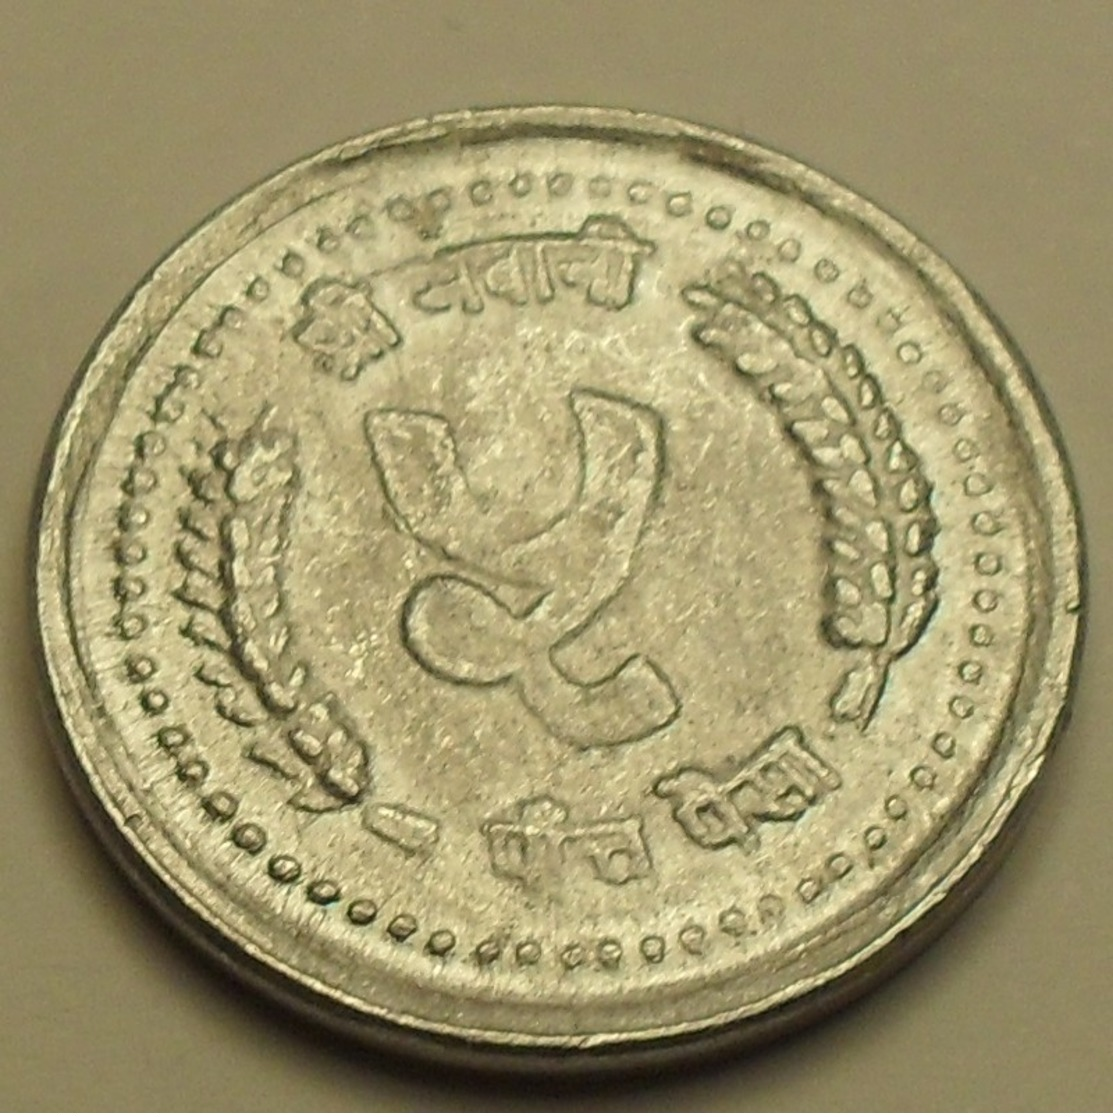 1985 - Népal - 2042 - 5 PAISA, Birendra Bir Bikram, KM 1013 - Népal